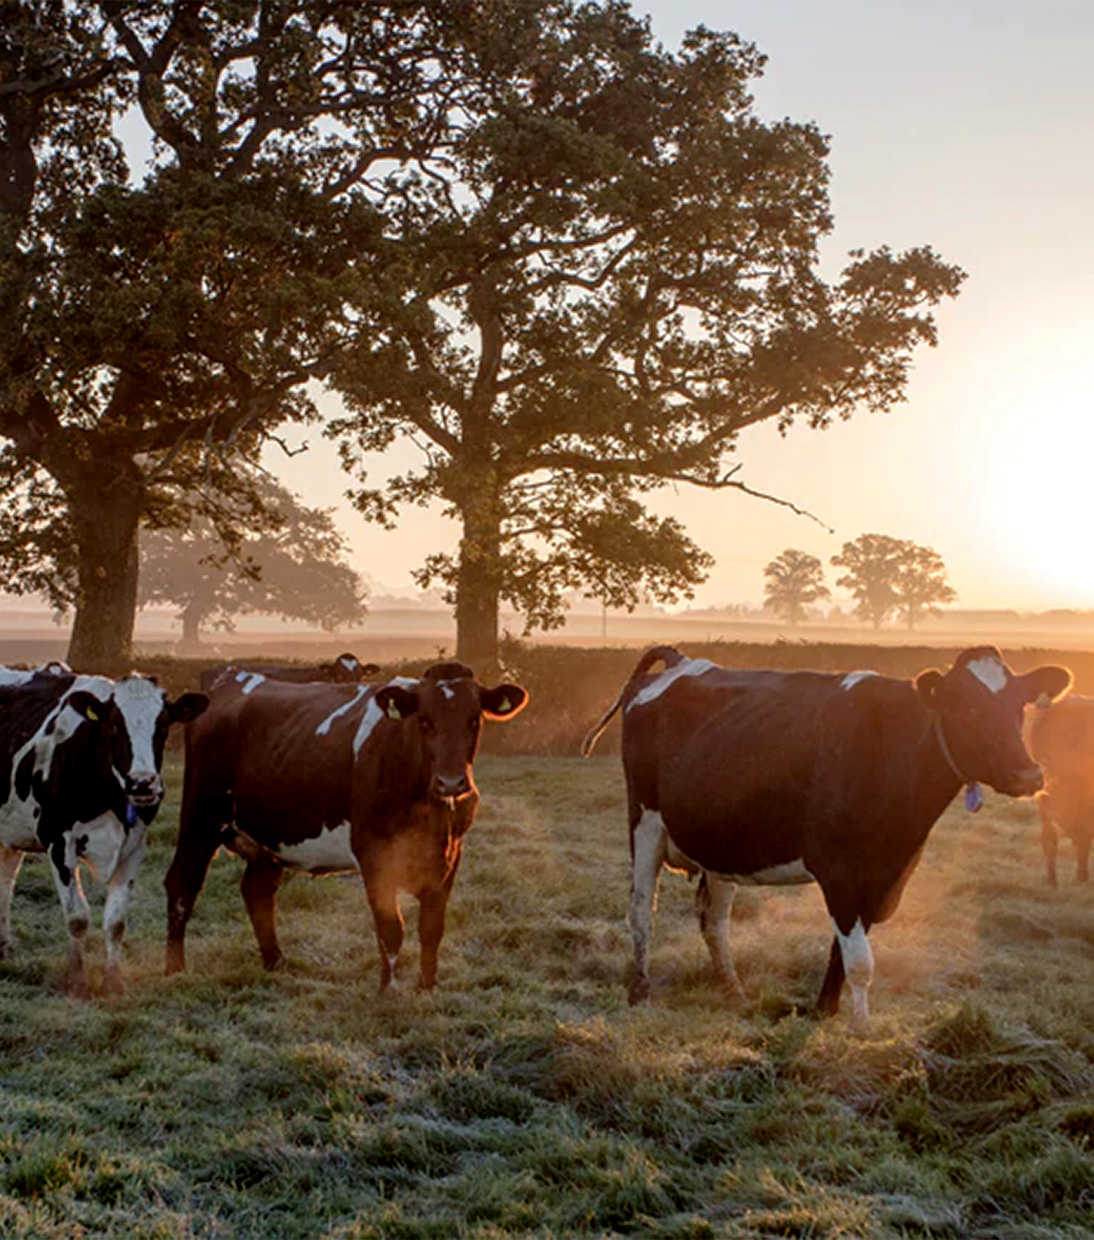 Regionale Zutaten wie die Milch unserer Kühe sind wichtig bei der Cheddar Herstellung